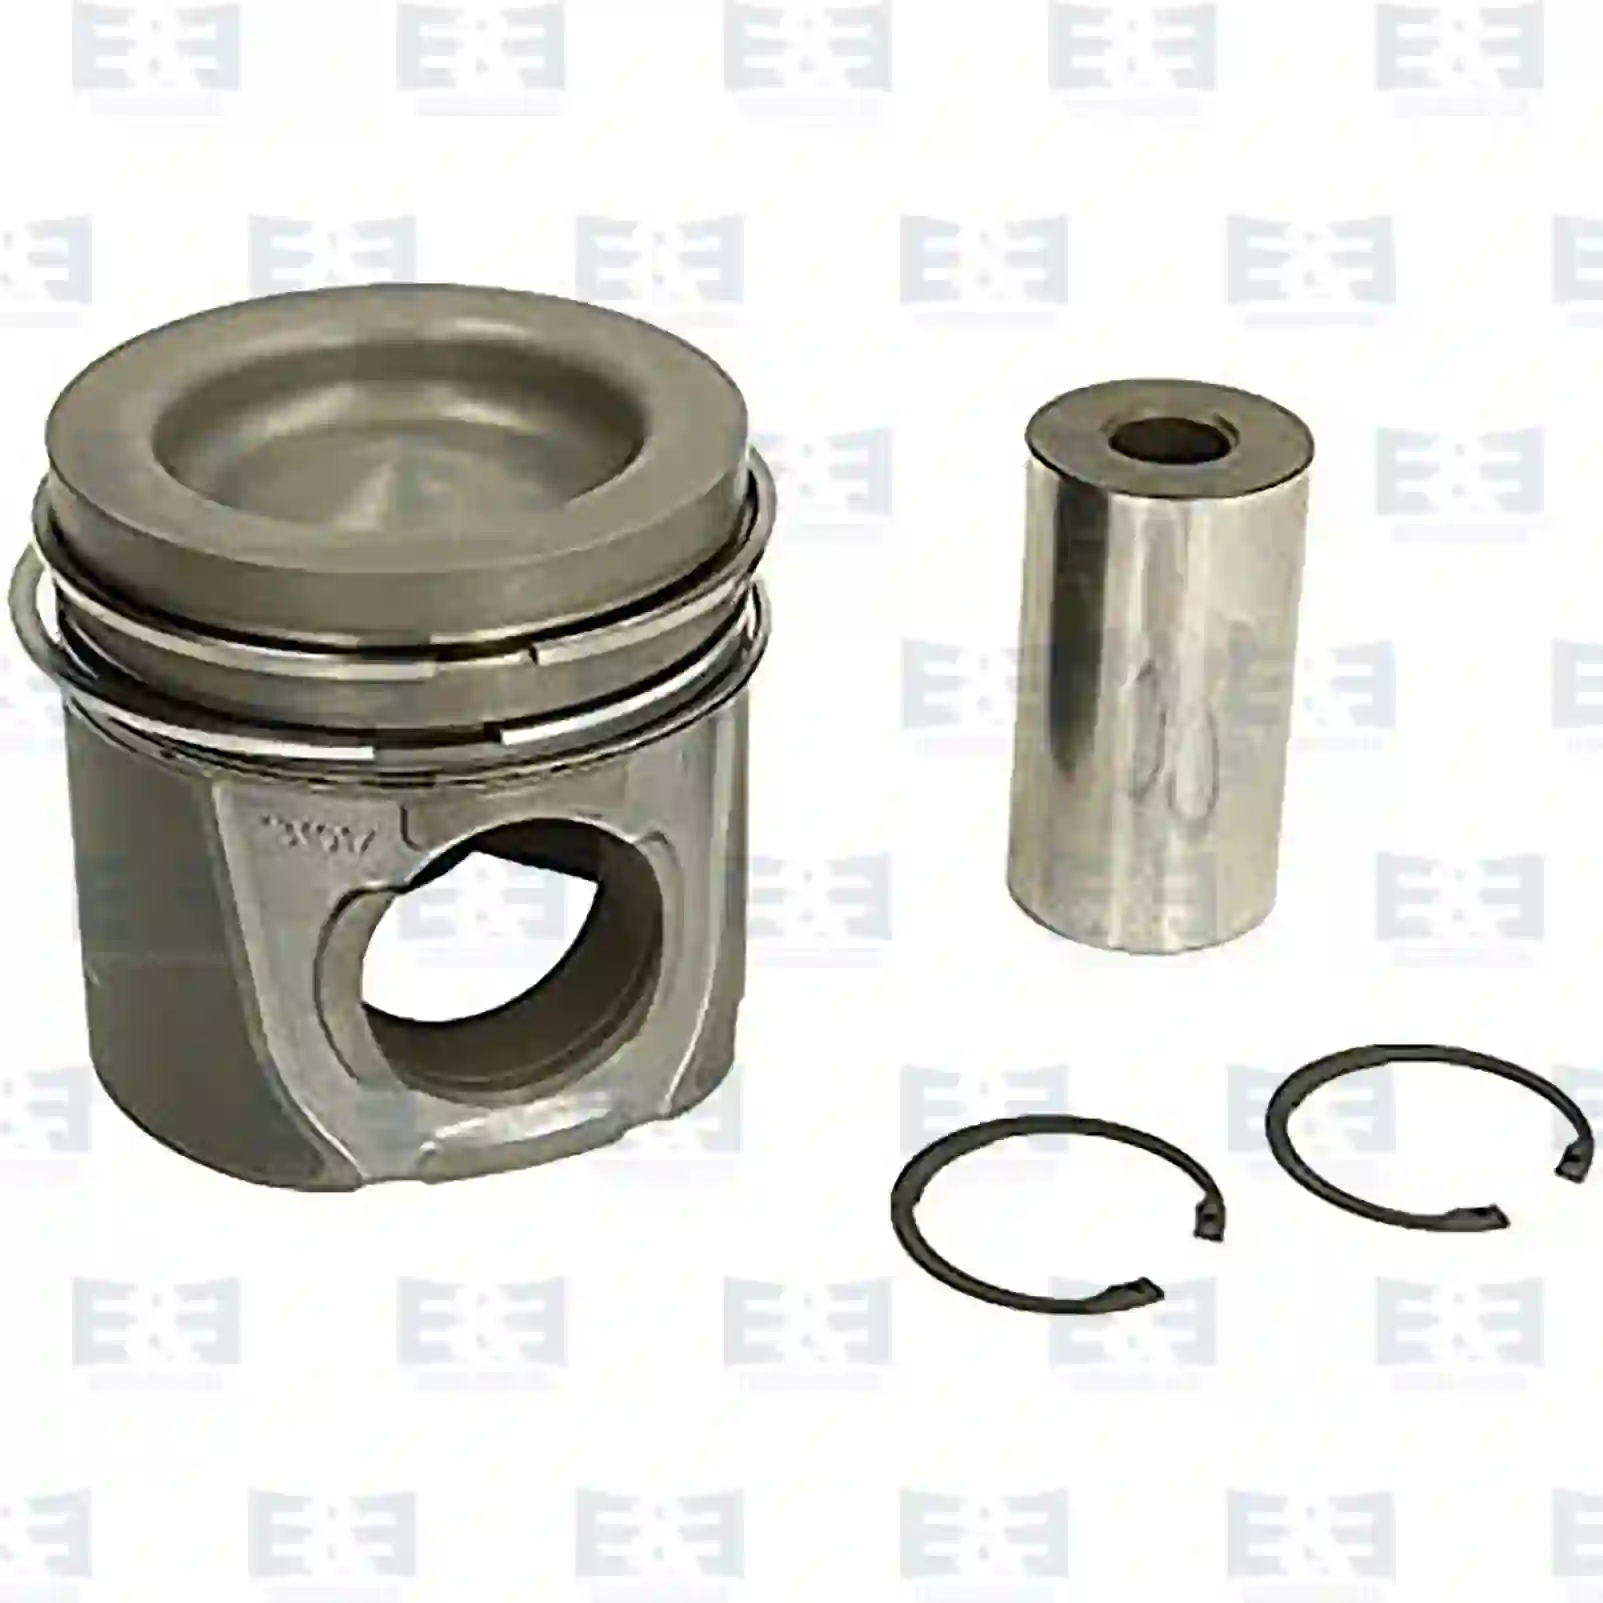  Piston, complete with rings || E&E Truck Spare Parts | Truck Spare Parts, Auotomotive Spare Parts